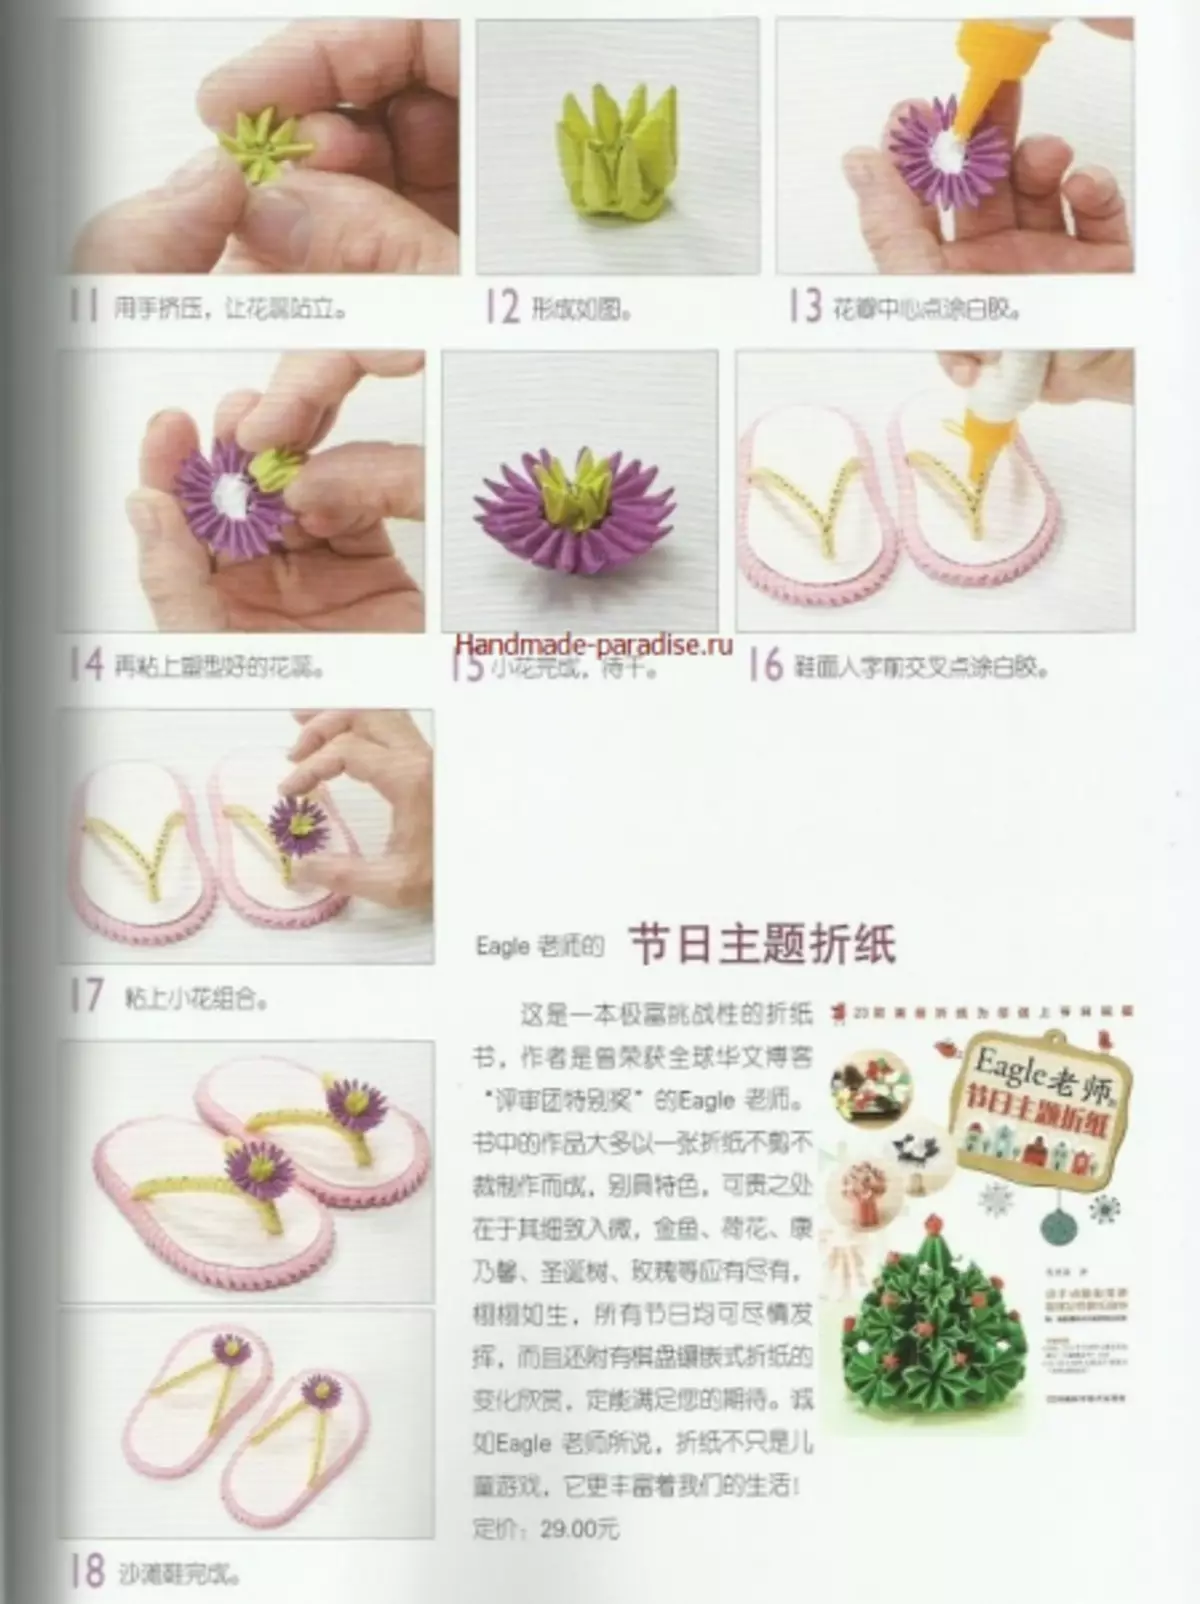 Origami modular. Revista xaponesa con clases maxistrais